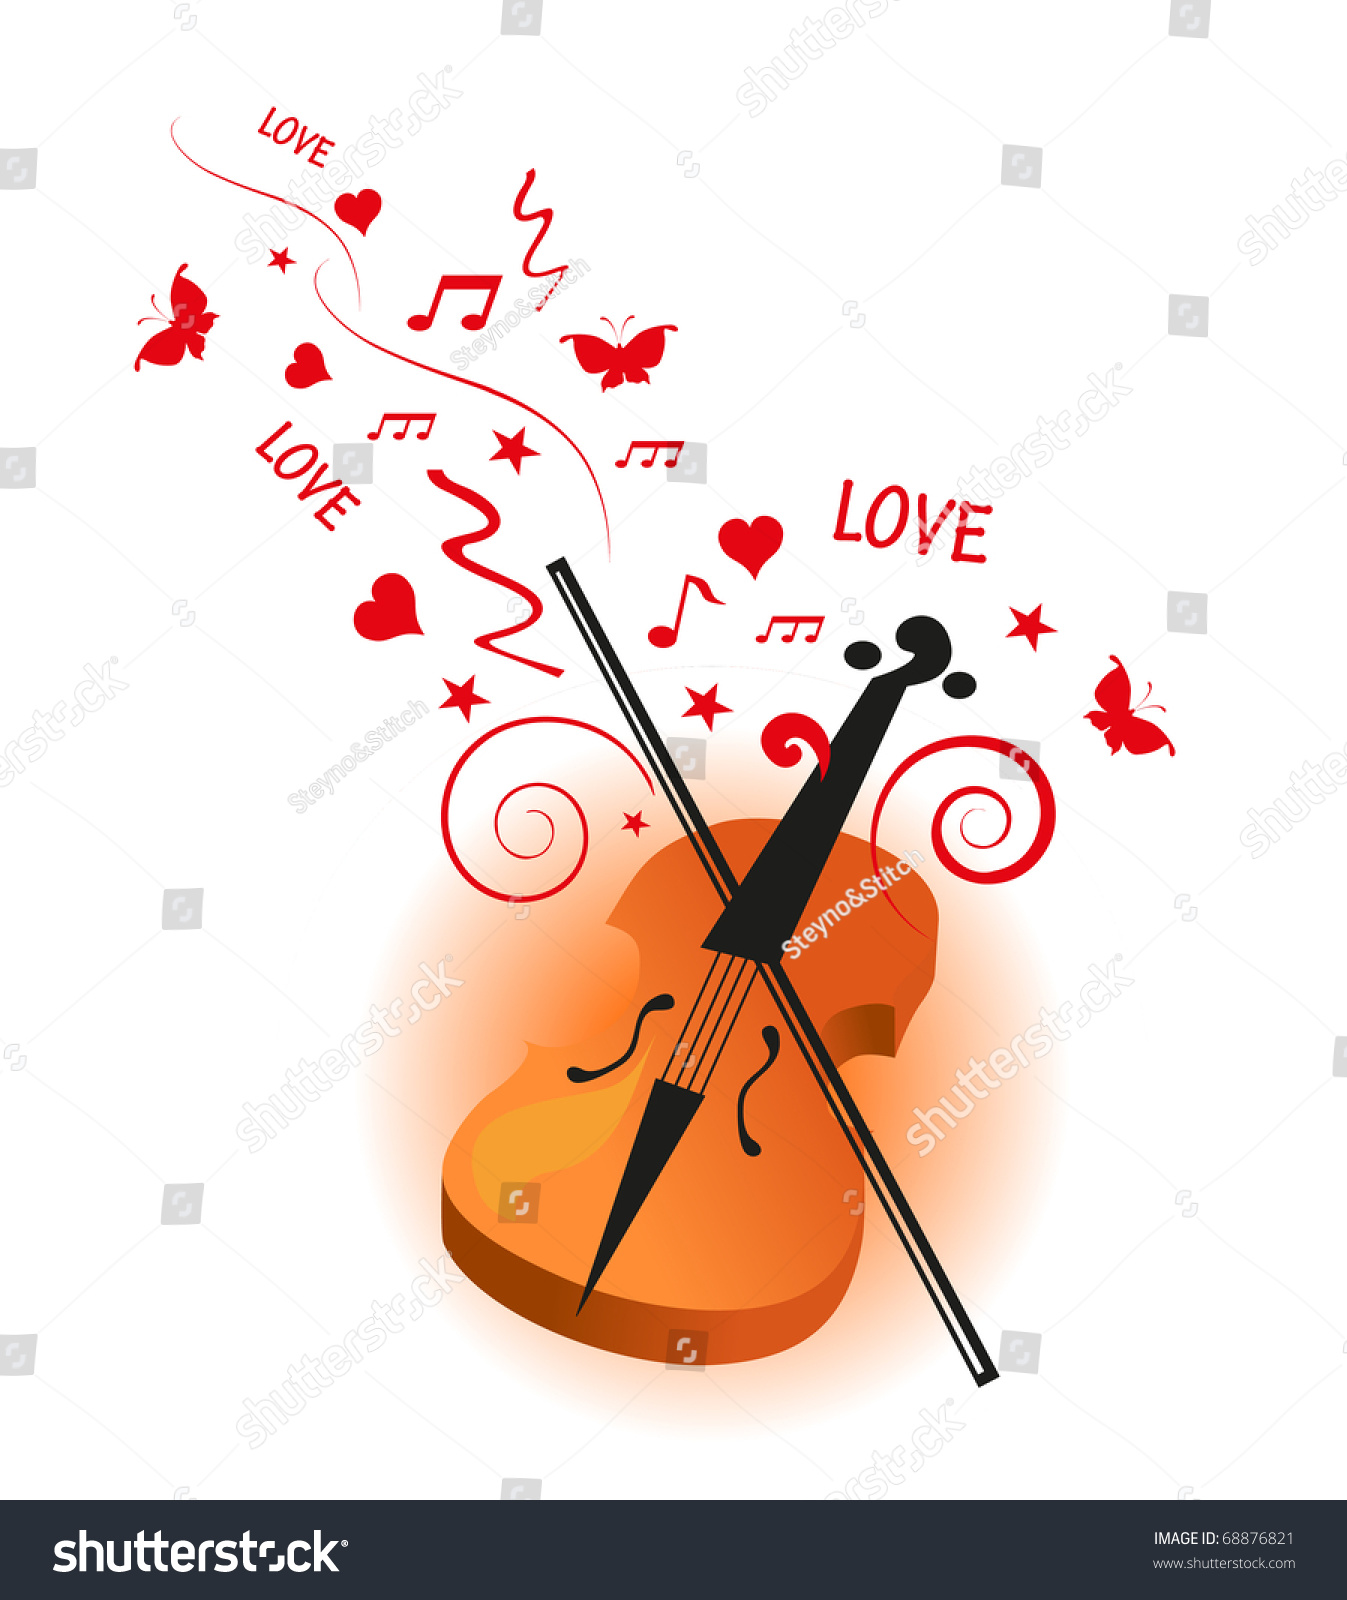 Violin love. Информация о скрипке. Постер скрипачка.